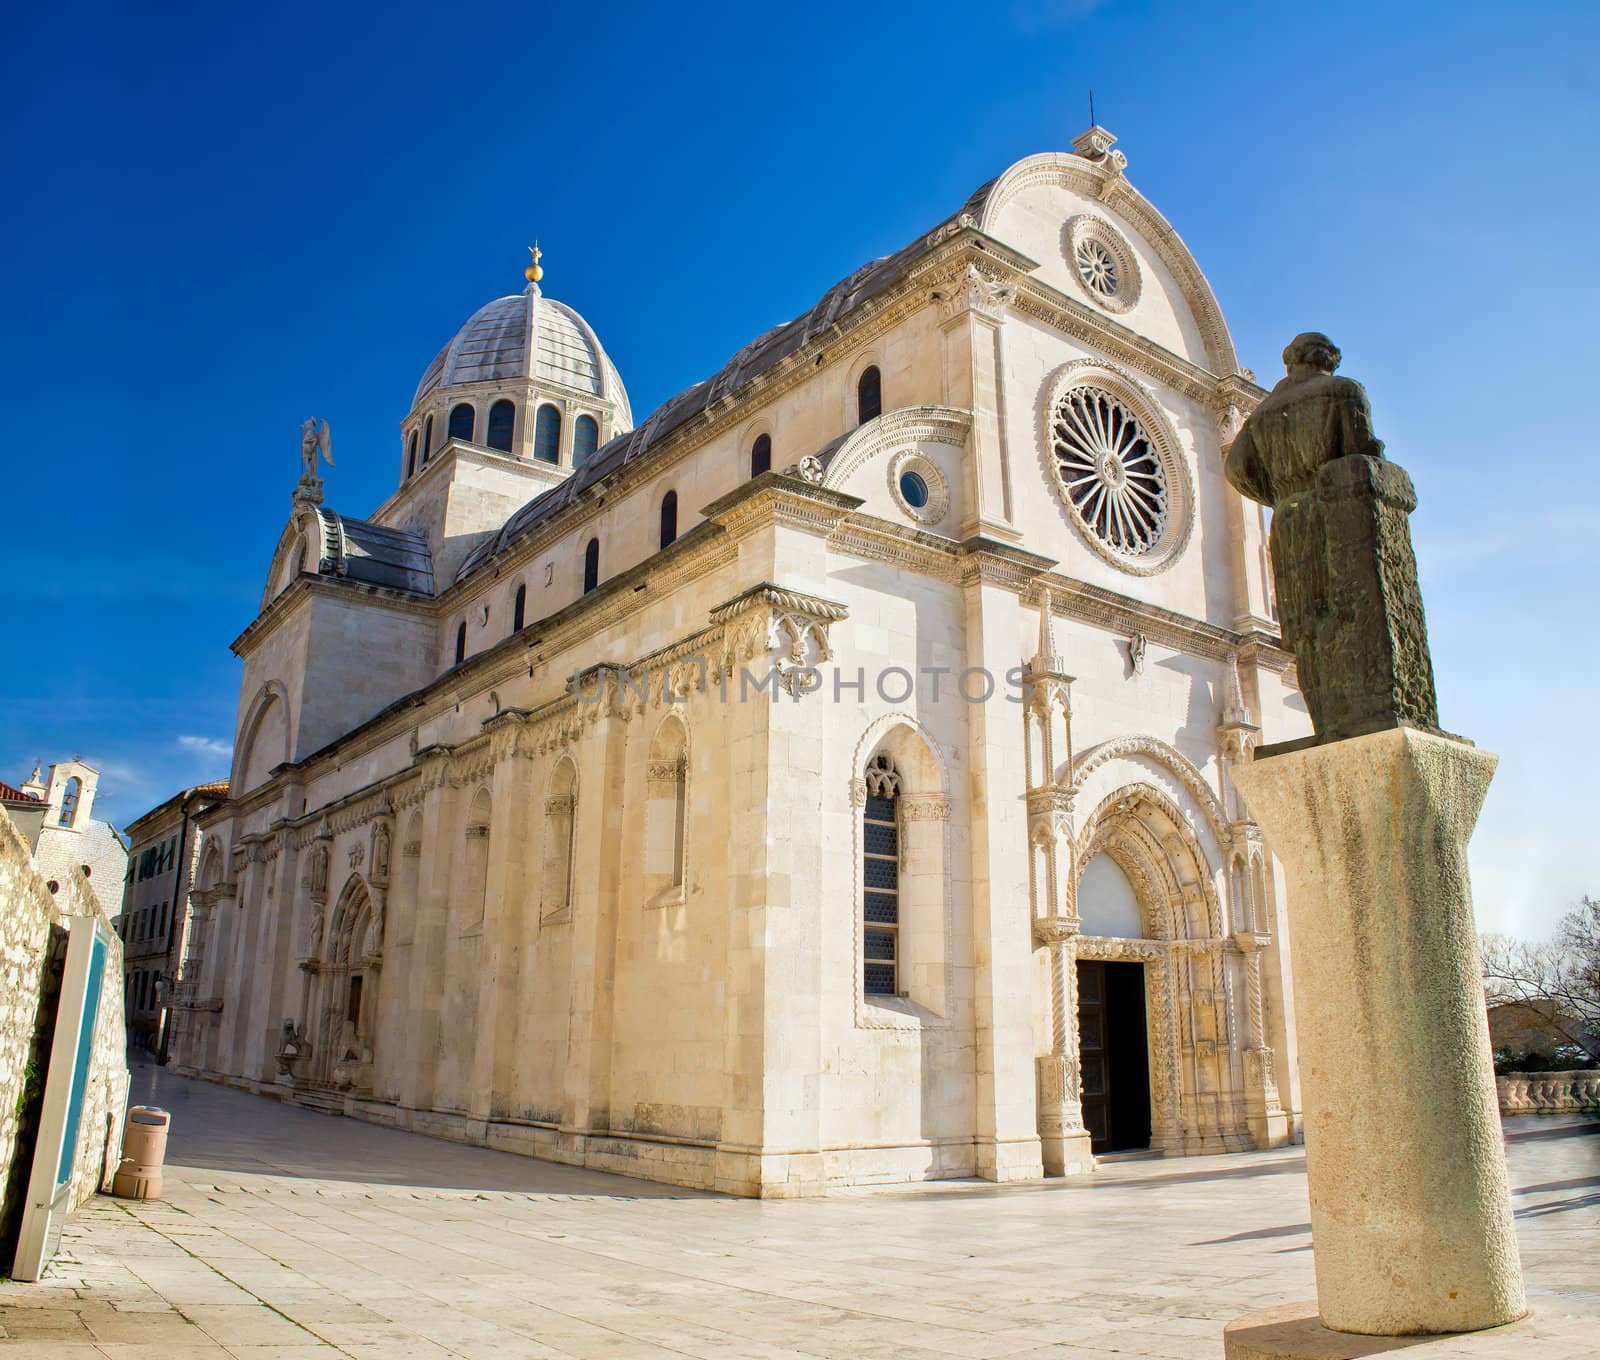 Saint James cathedral in Sibenik - UNESCO world heritage site, Dalmatia, Croatia